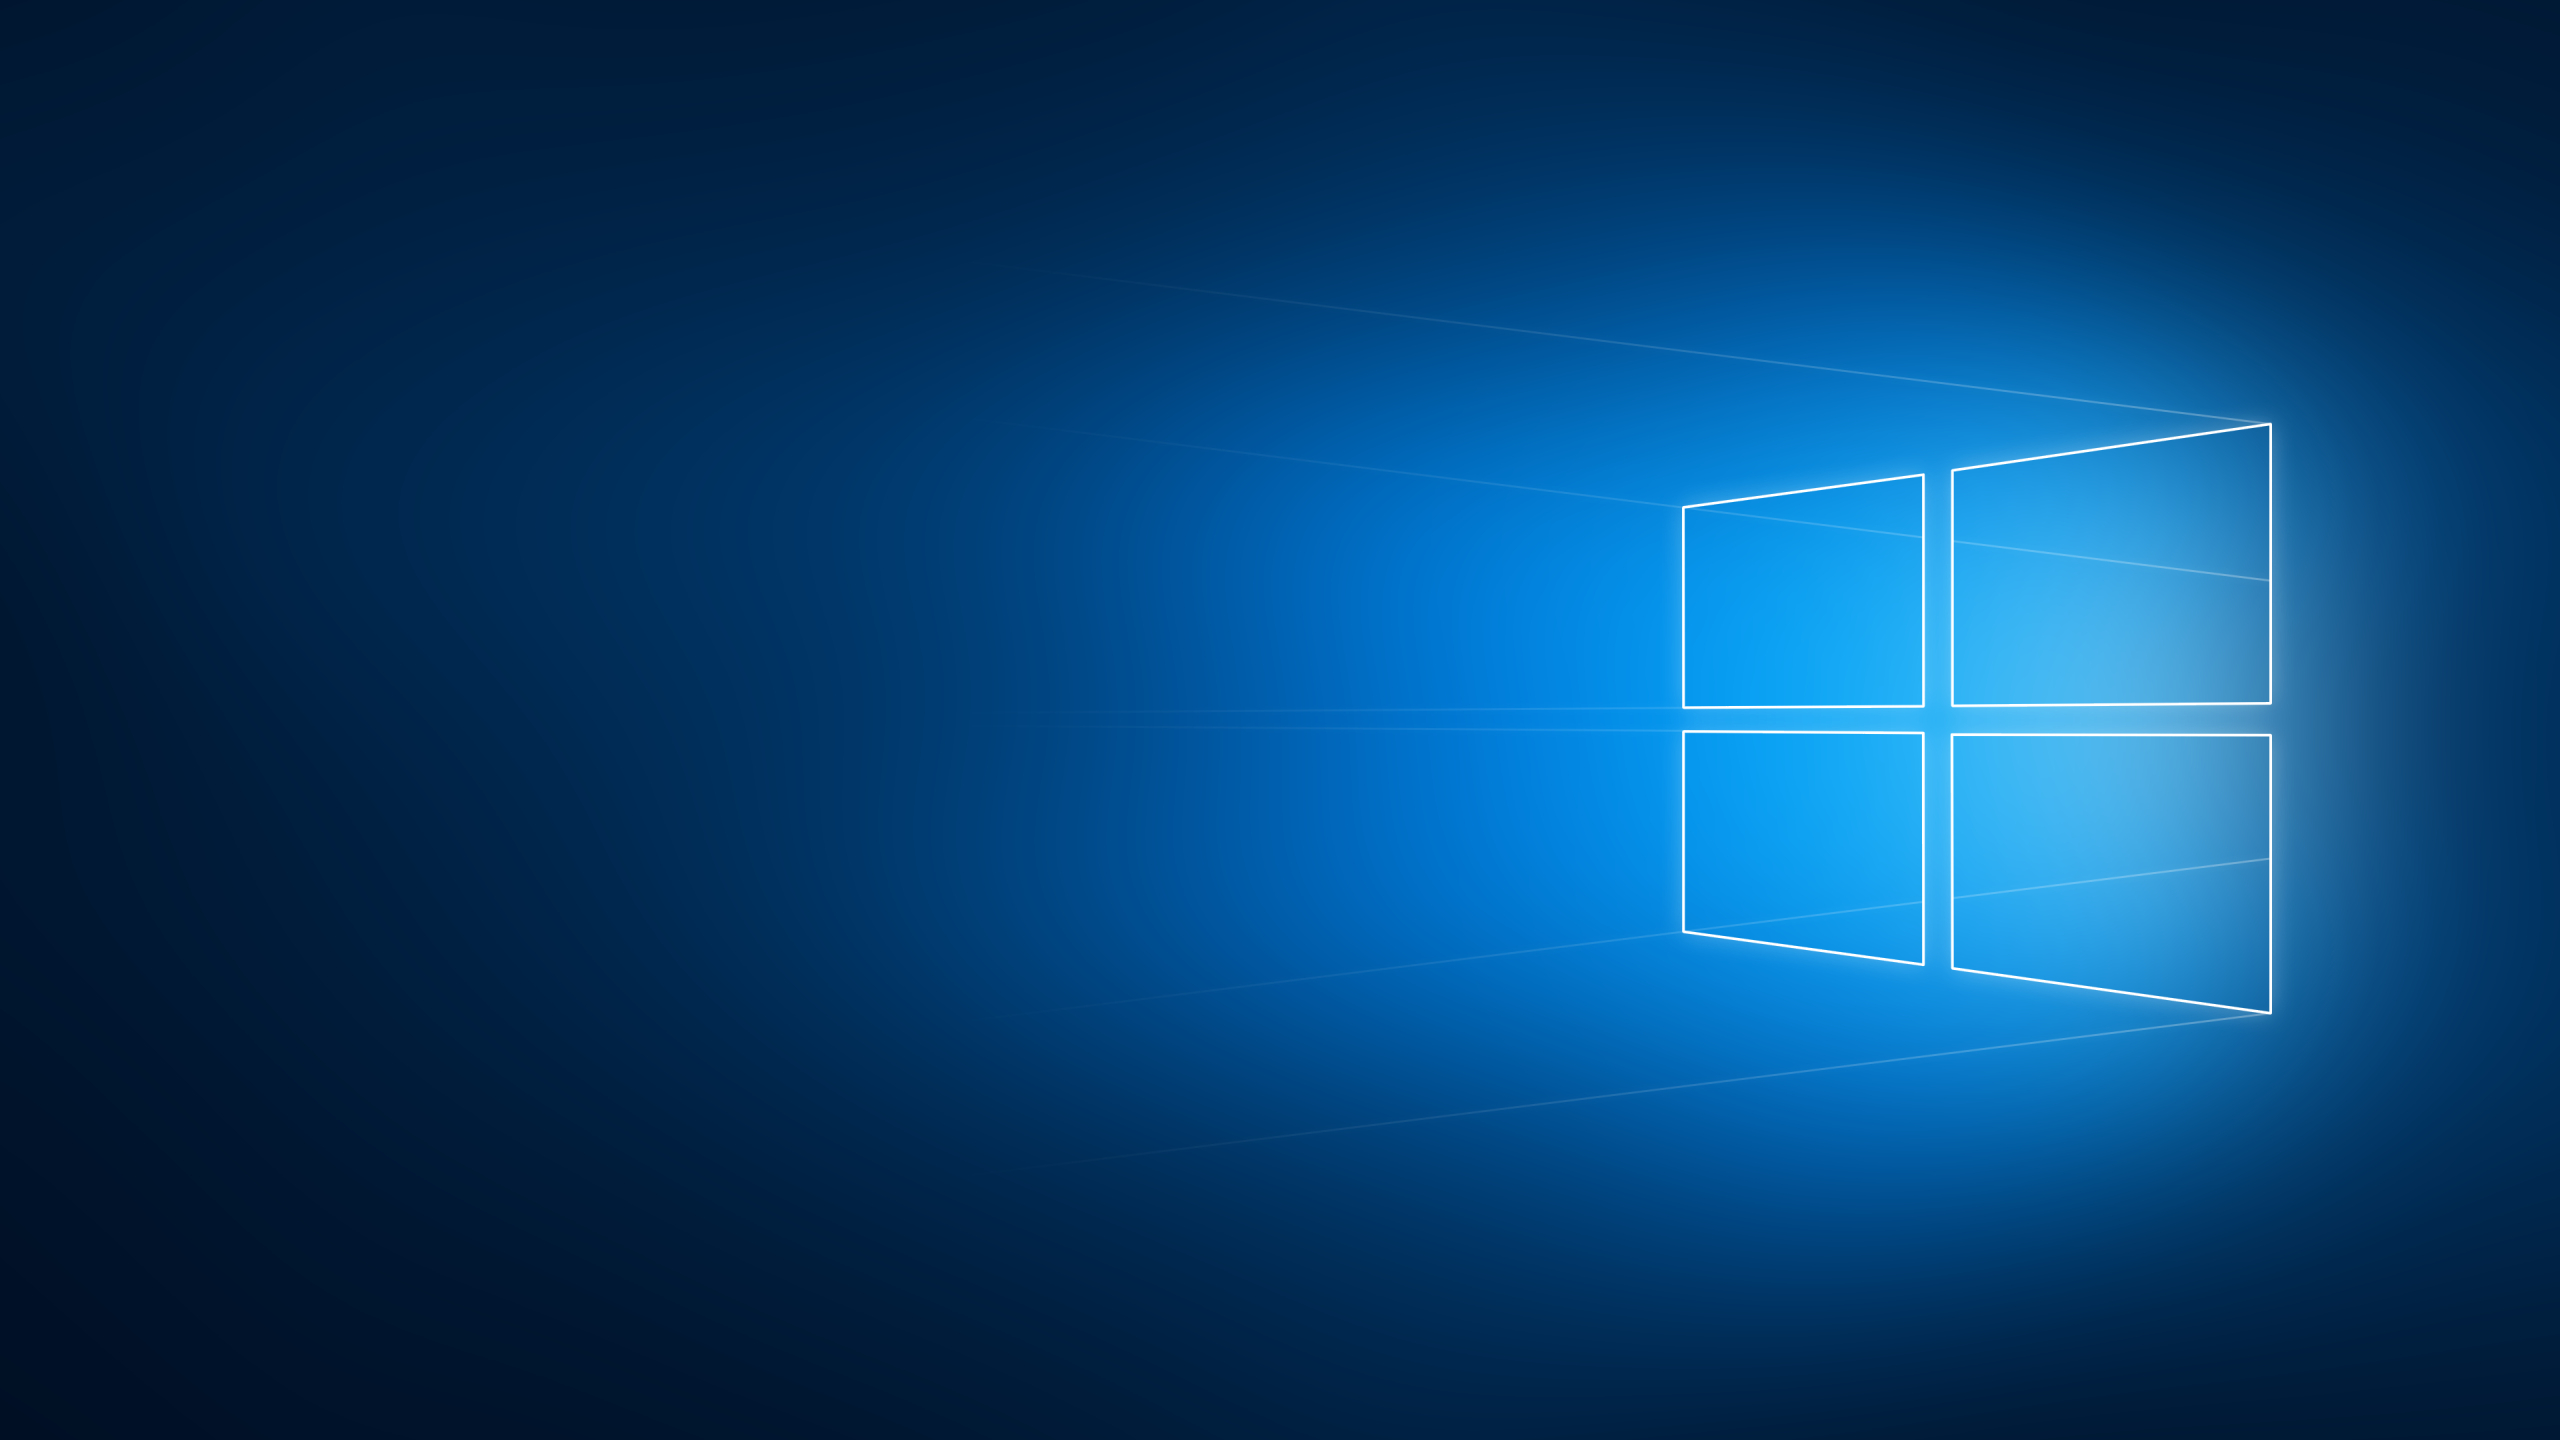 Windows 10 Wallpaper Hd 2560X1440